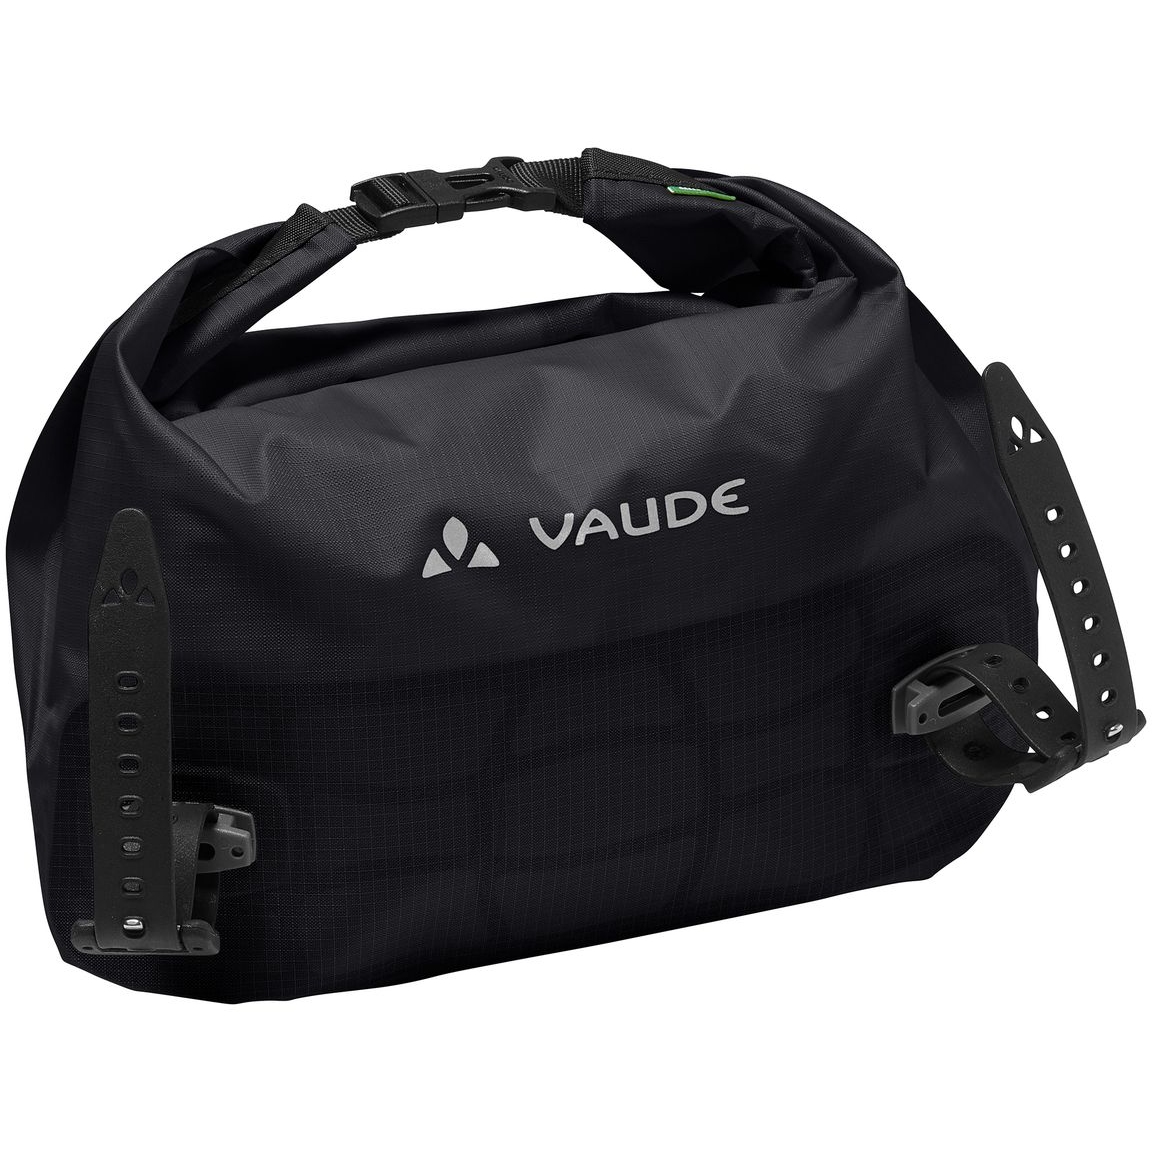 Produktbild von Vaude Aqua Box Light Lenkertasche - 4L - schwarz uni